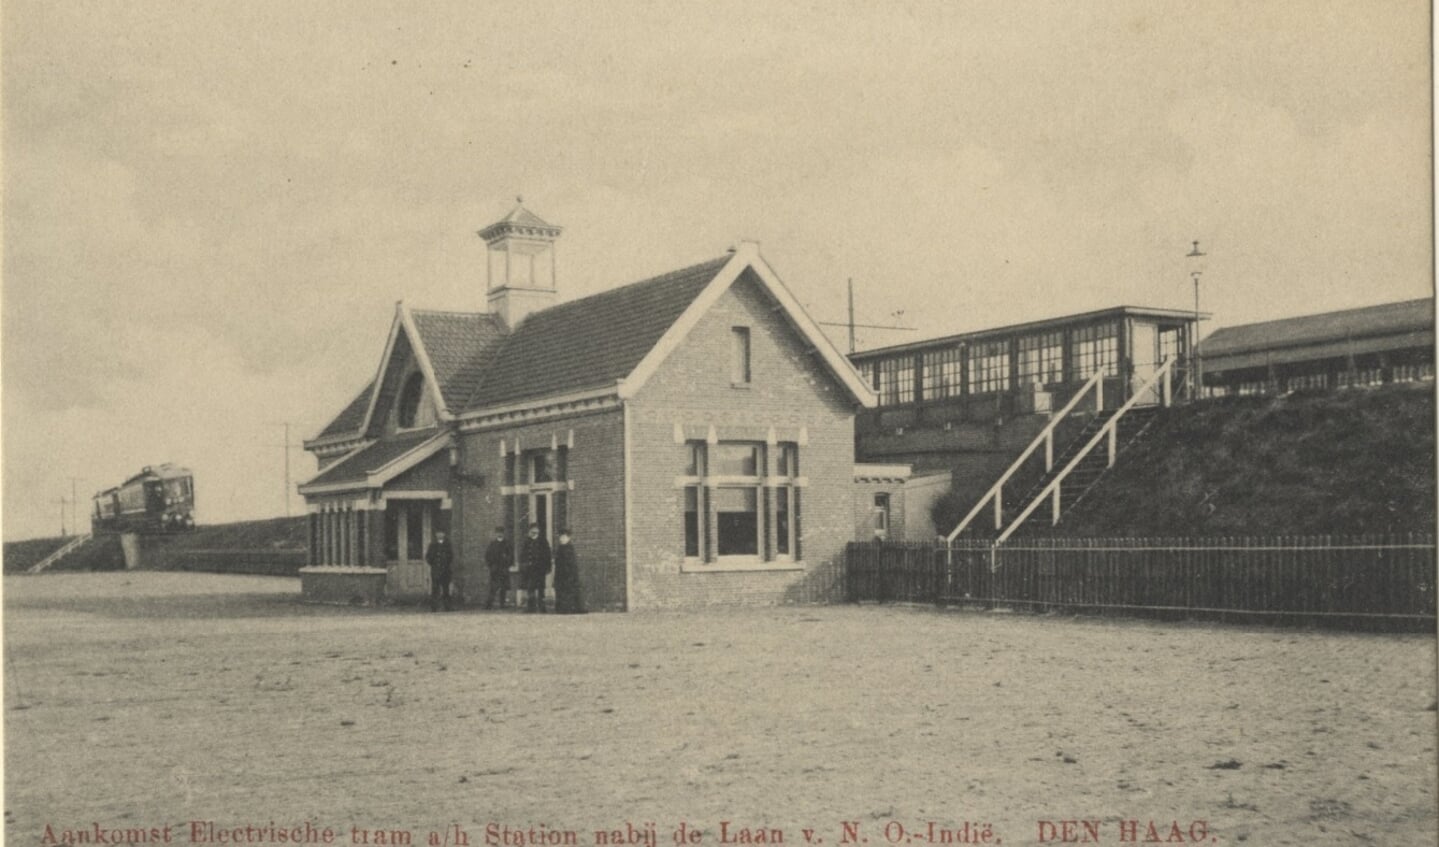 Station laan van Nieuw Oost-Indië, 1910.